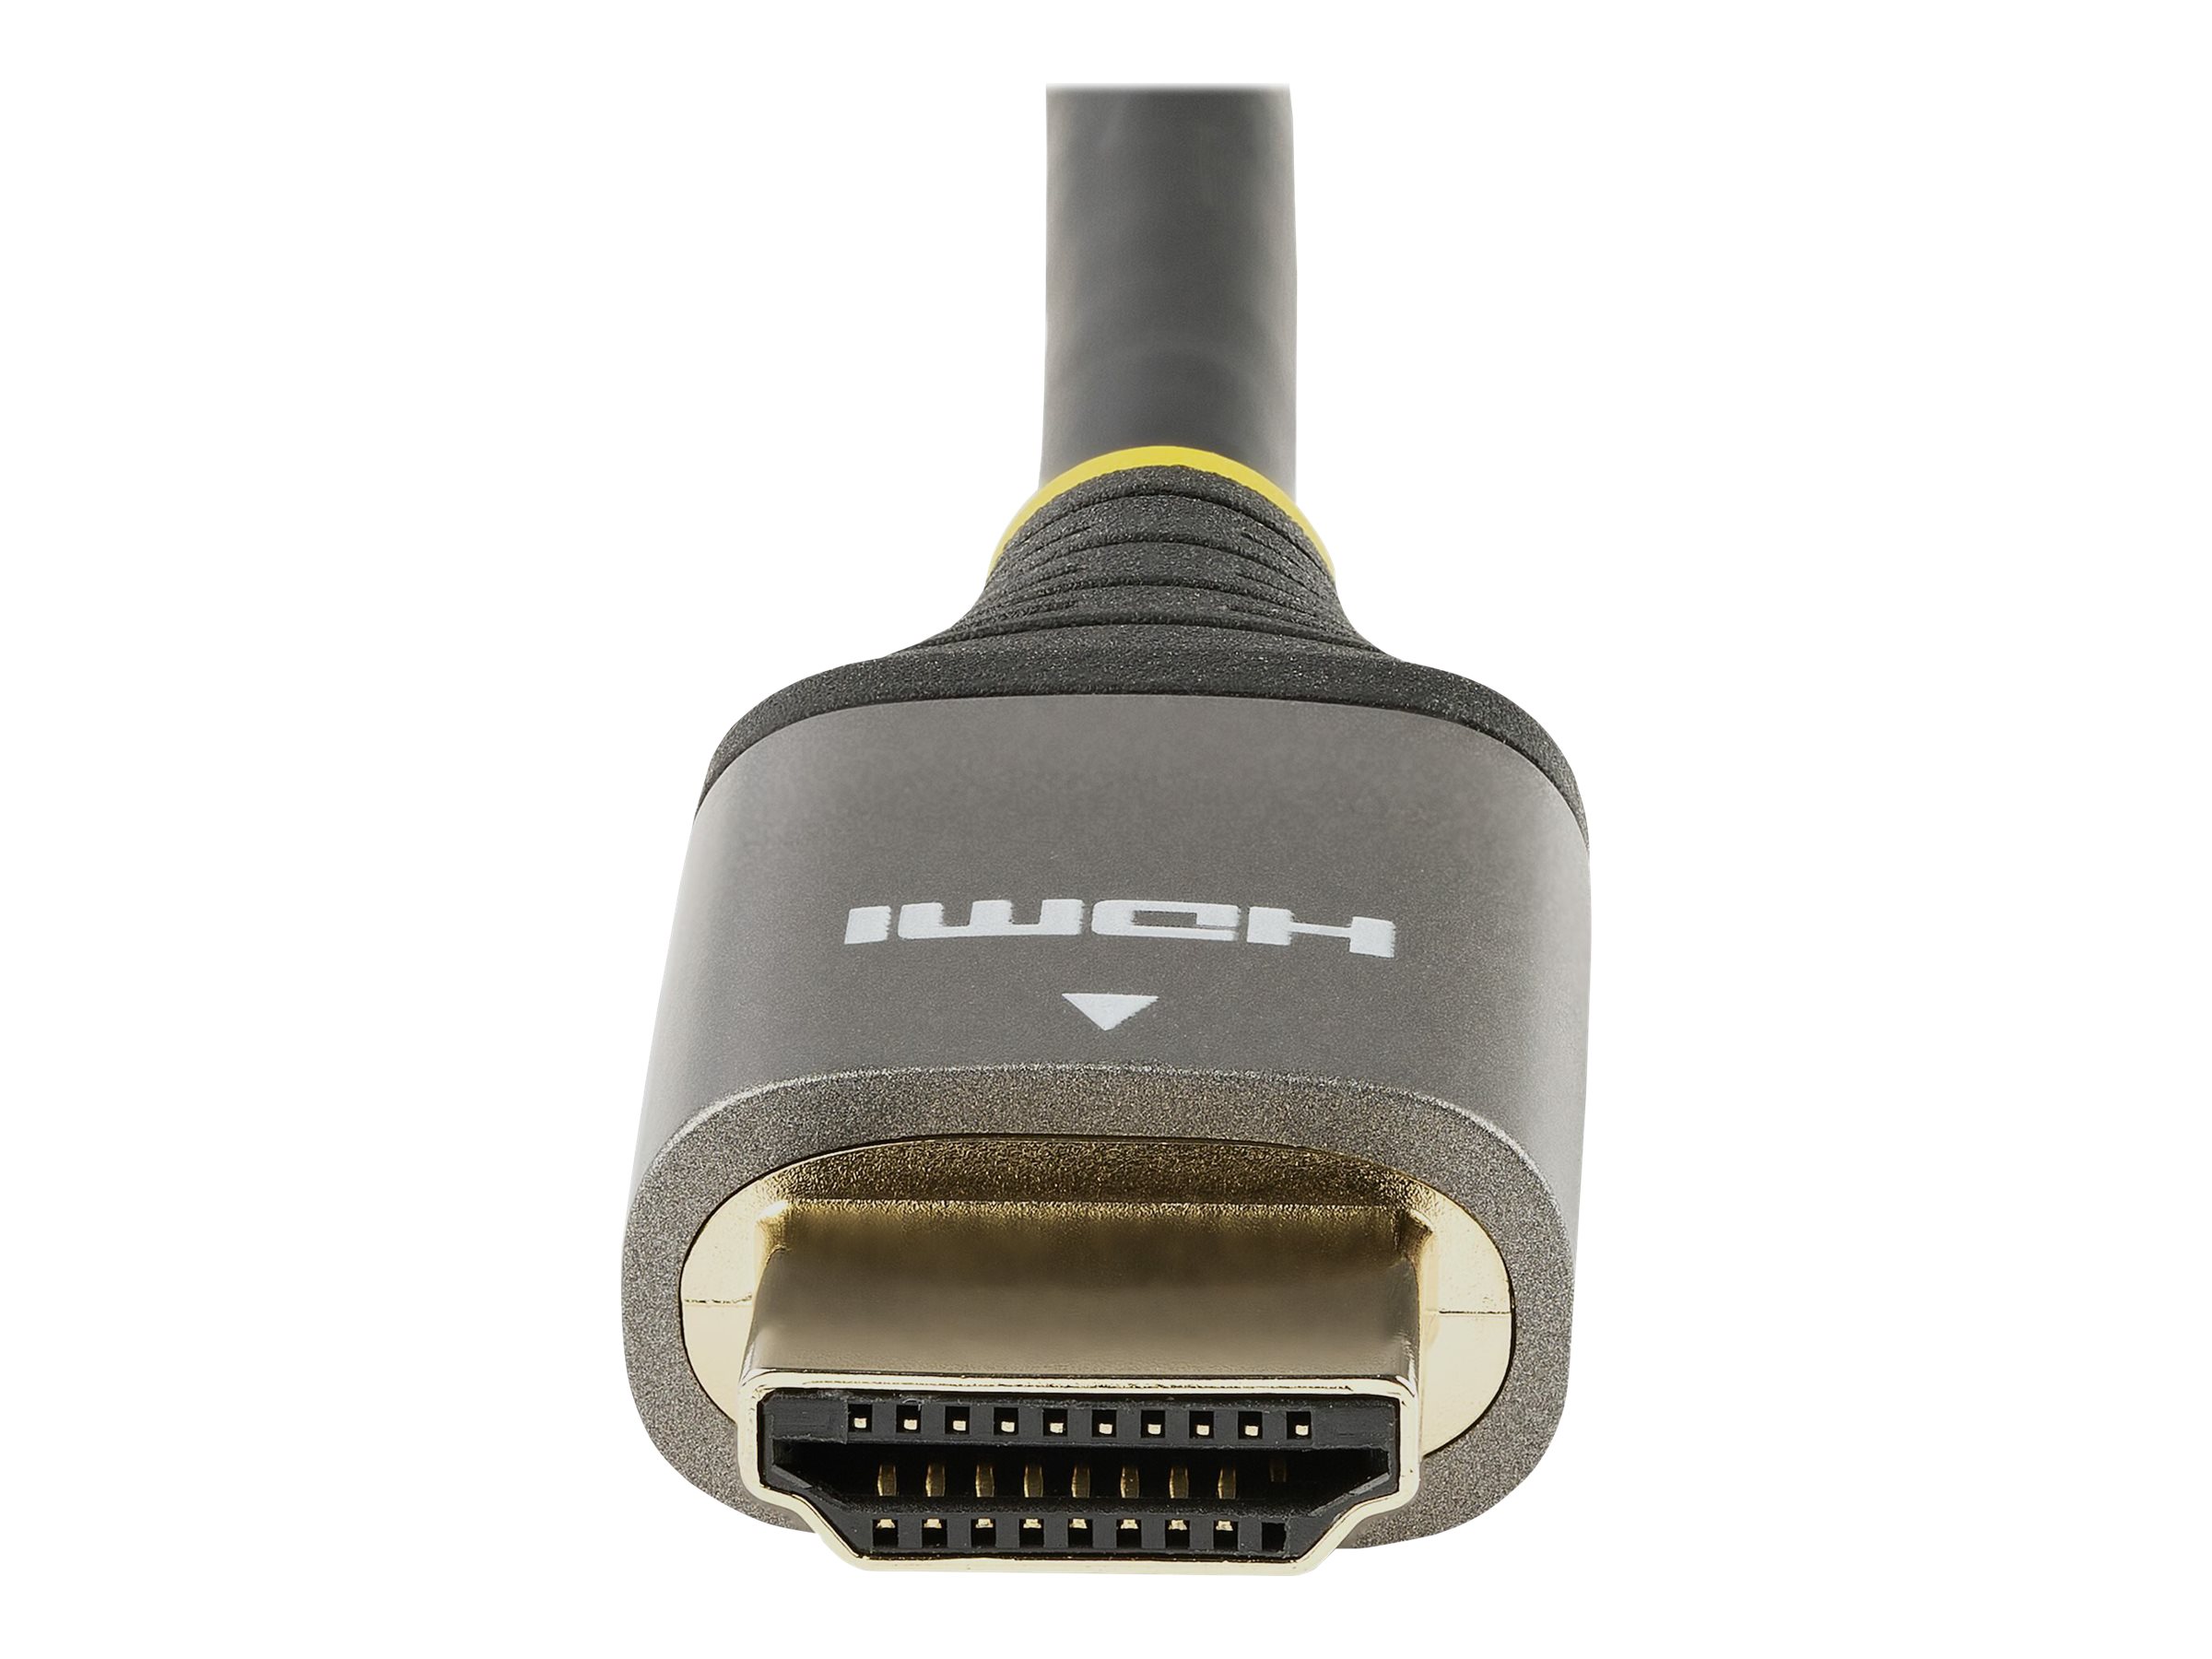 StarTech.com Câble HDMI 2.0 Premium Certifié 1m - Câble Écran HDMI High Speed Ultra HD 4K 60Hz avec Ethernet - HDR10, ARC - Cordon Moniteur Vidéo UHD - Câble HDMI pour PC/TV - M/M (HDMMV1M) - Premium High speed - câble HDMI avec Ethernet - HDMI mâle pour HDMI mâle - 1 m - blindé - gris, noir - passif, support pour 4K60Hz (3840 x 2160) - HDMMV1M - Câbles HDMI